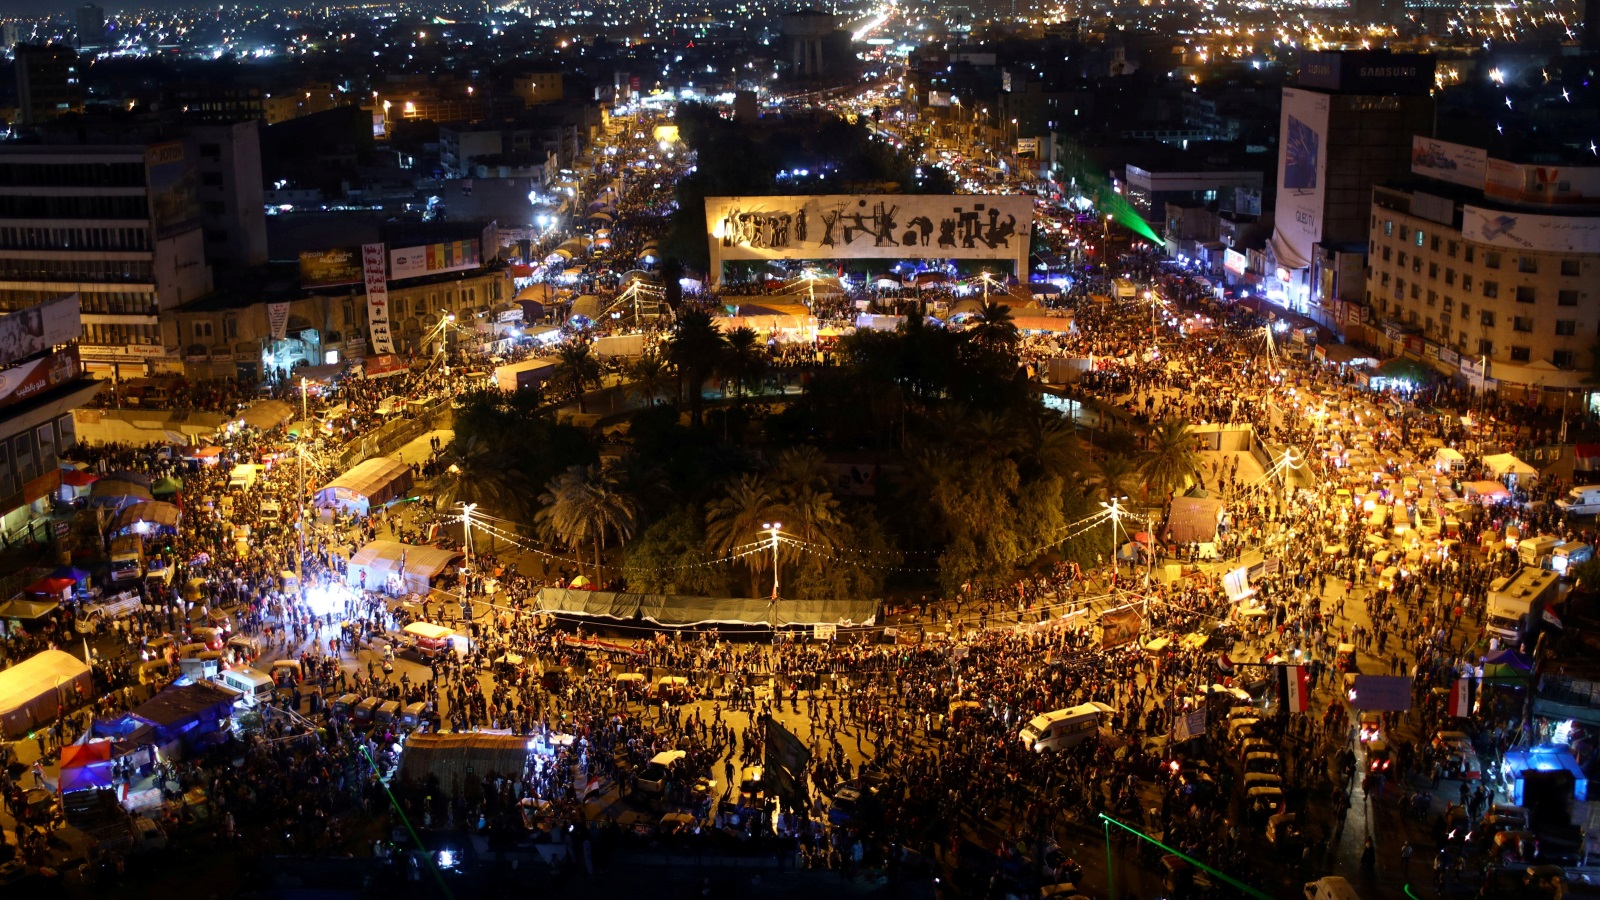 ساحة التحرير شهدت أمس احتفالية أطلقت خلالها بالونات بيضاء وسط هتافات ورفع أعلام العراق (رويترز)